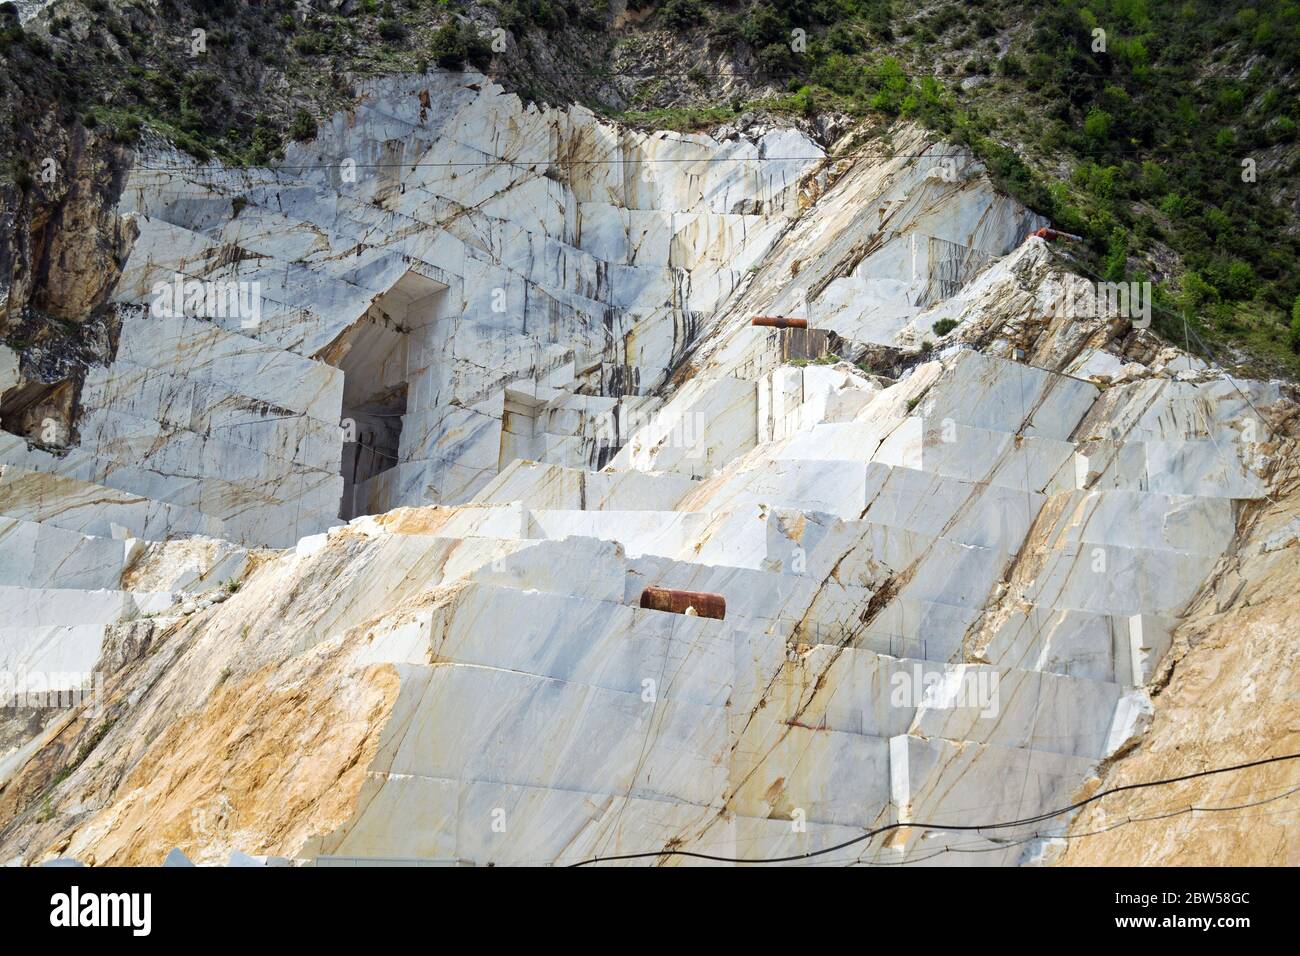 Primo piano di una delle famose cave di marmo bianco di Carrara nelle Alpi Apuane (Alpi Apuane), Toscana, Italia, Europa Foto Stock